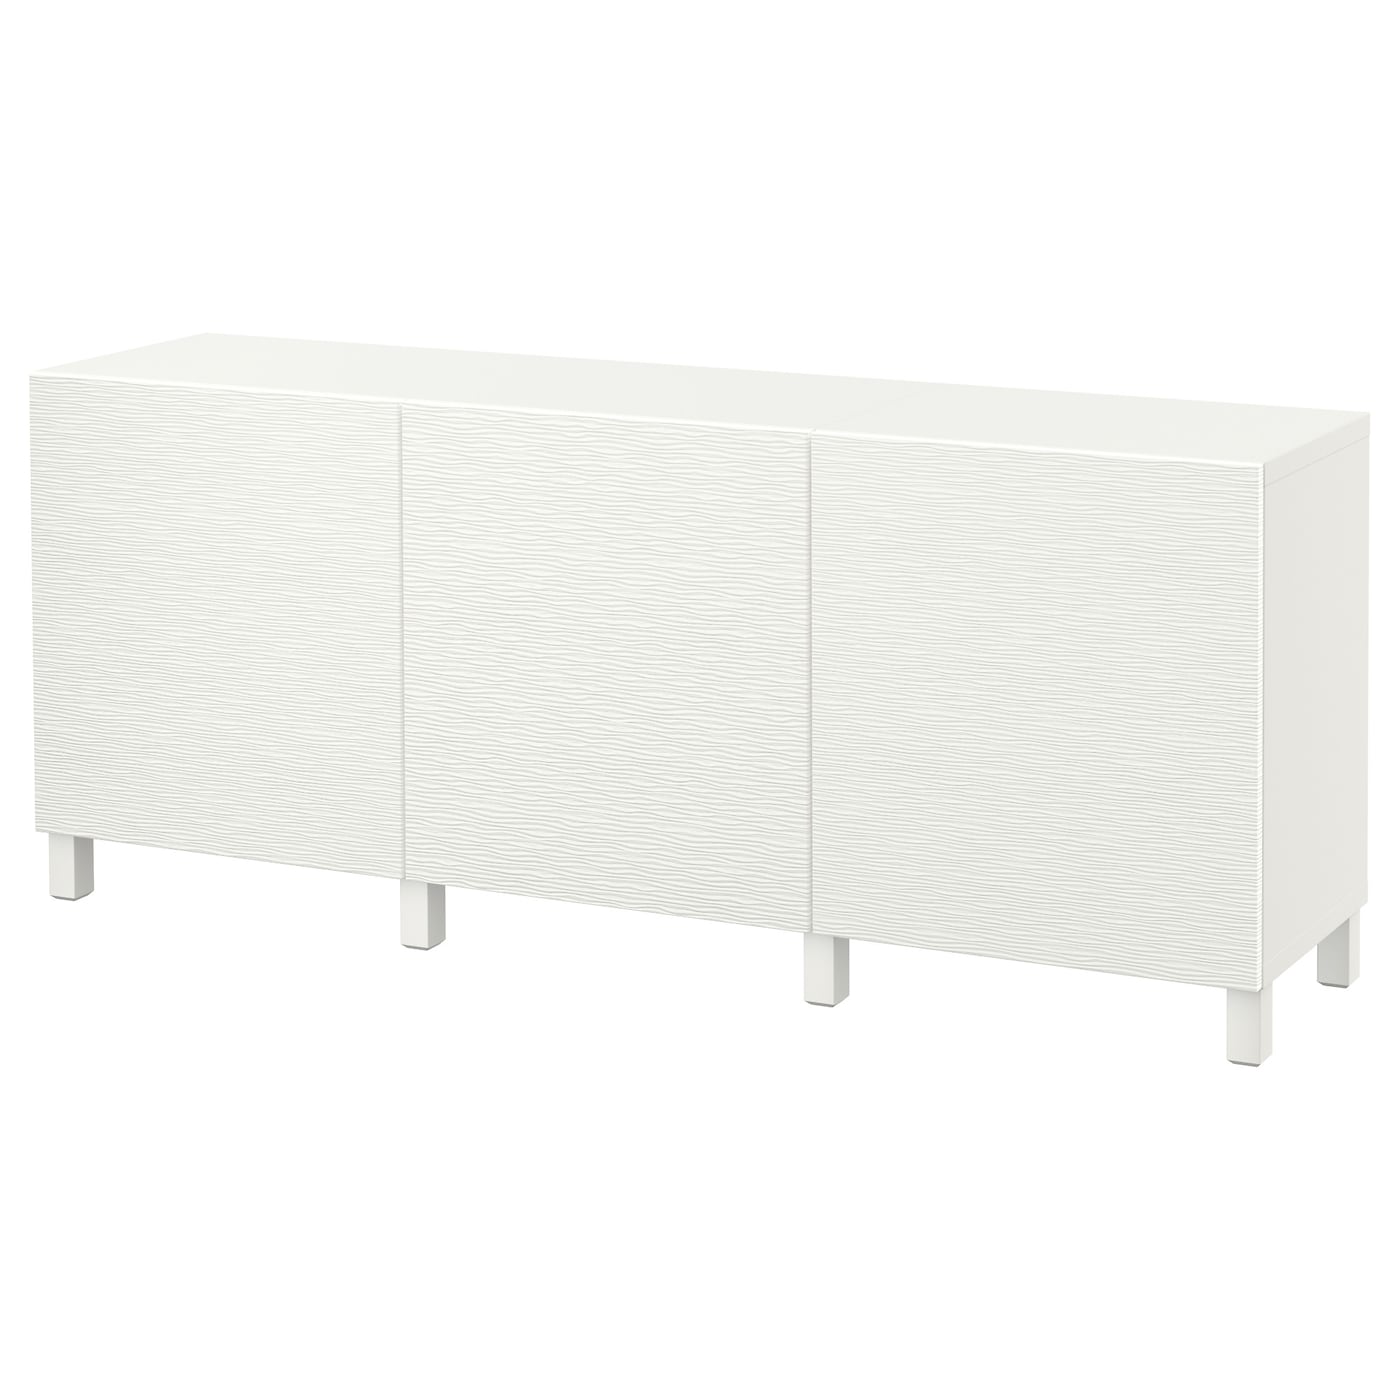 IKEA BESTÅ Kombinacja z drzwiami, Biały/Laxviken/Stubbarp biały, 180x42x74 cm